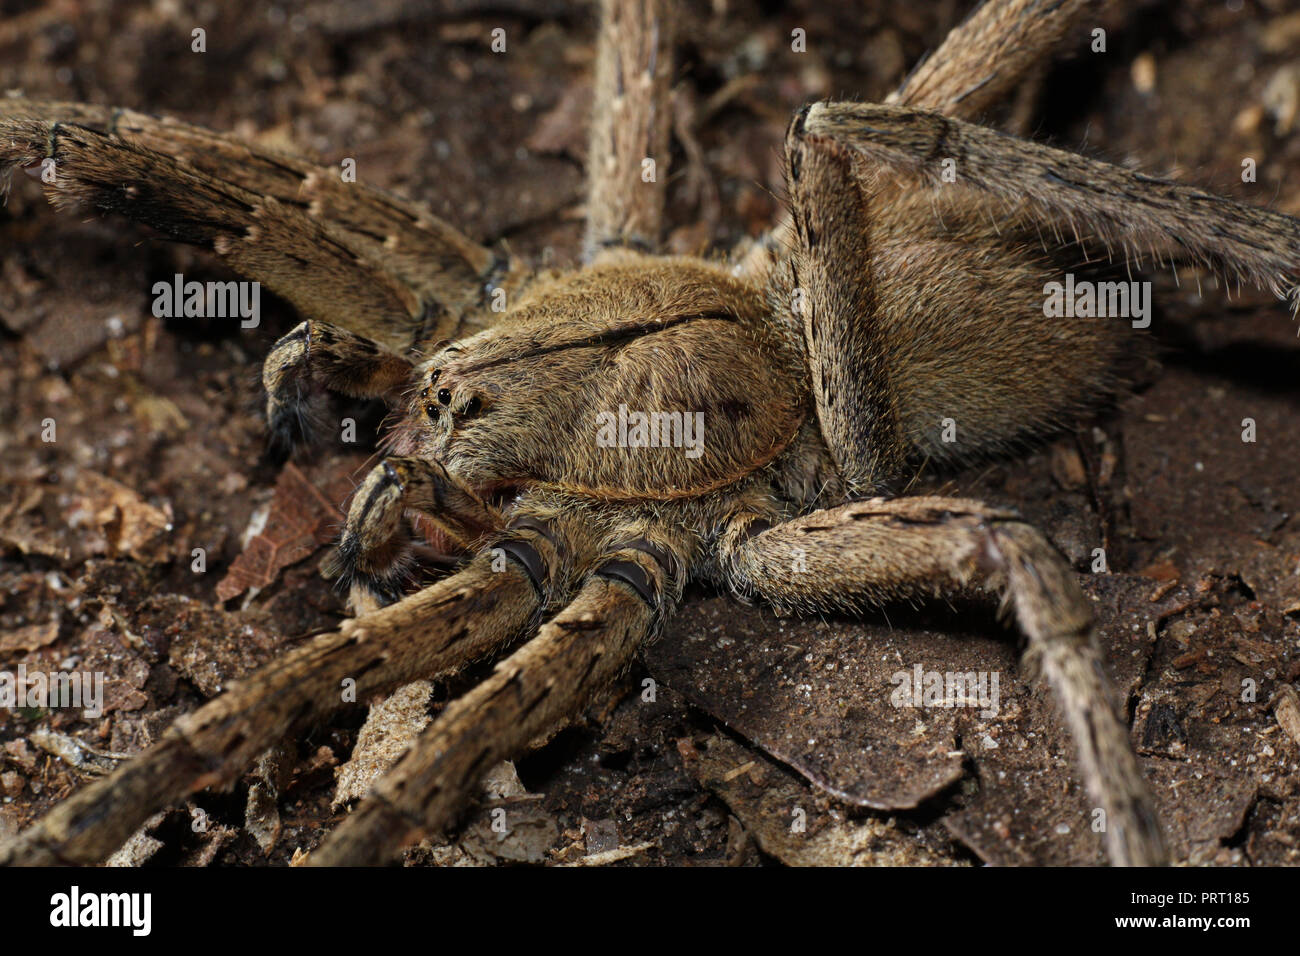 Phoneutria maschio (brasiliano ragno errante / armadeira), ragno velenoso sul suolo della foresta, dal sud-est del Brasile. Foto Stock